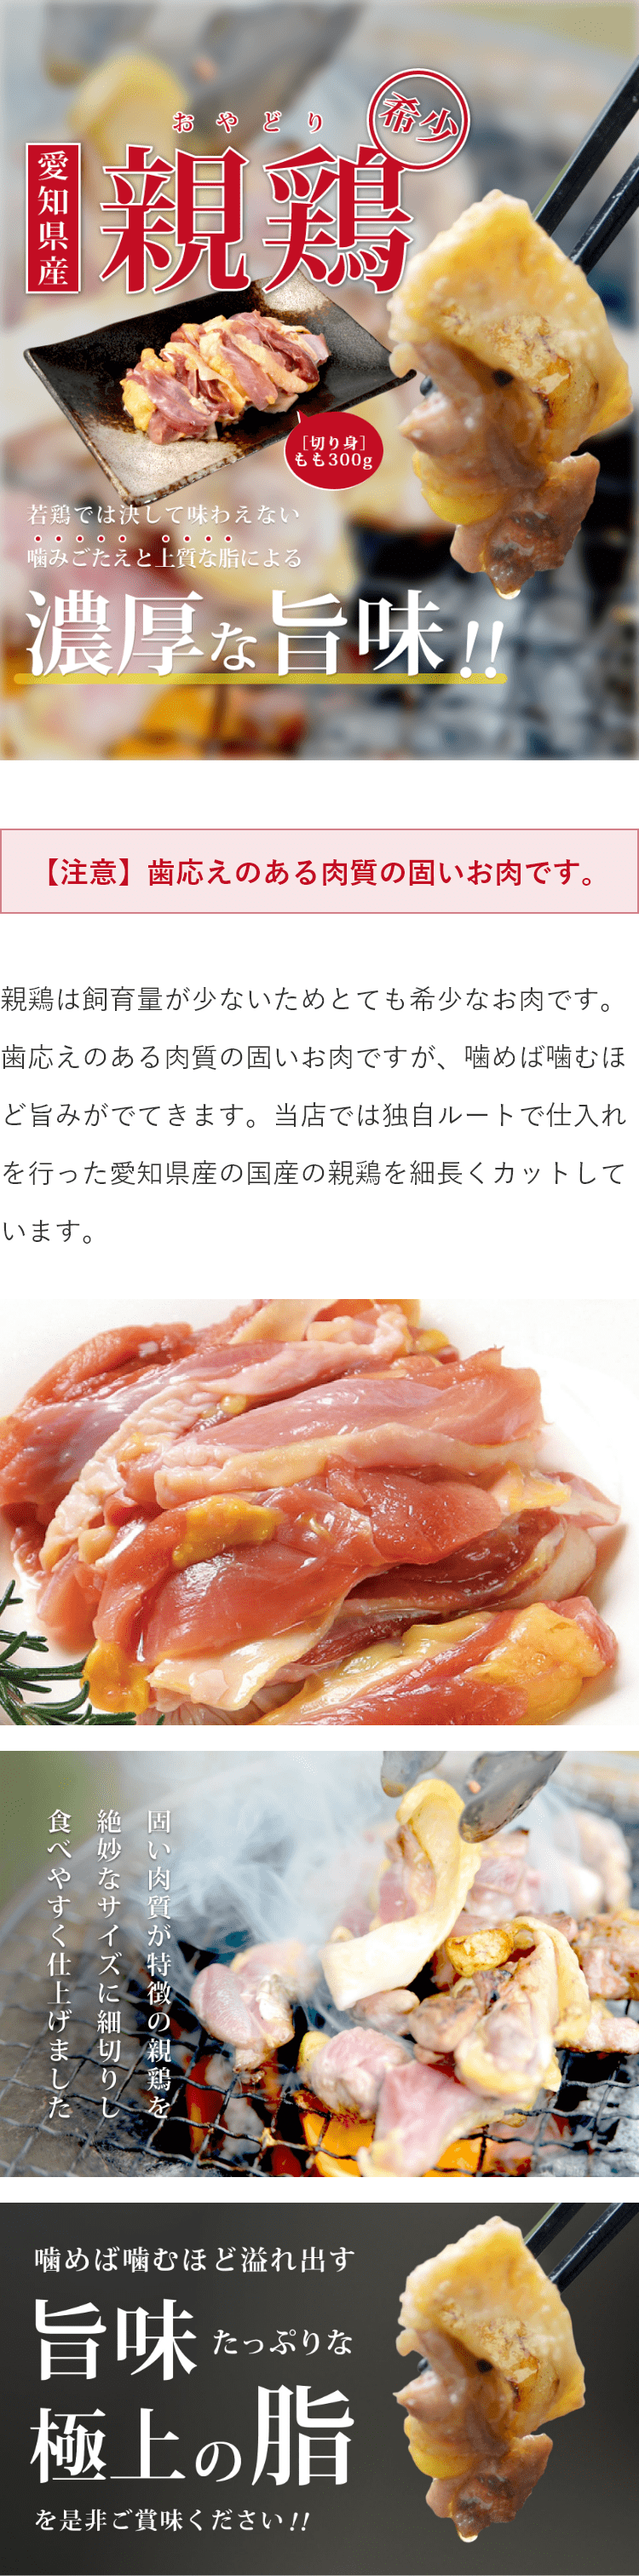 香川県産 親鶏 むね肉 鶏肉 業務用 サイズ 2kg 